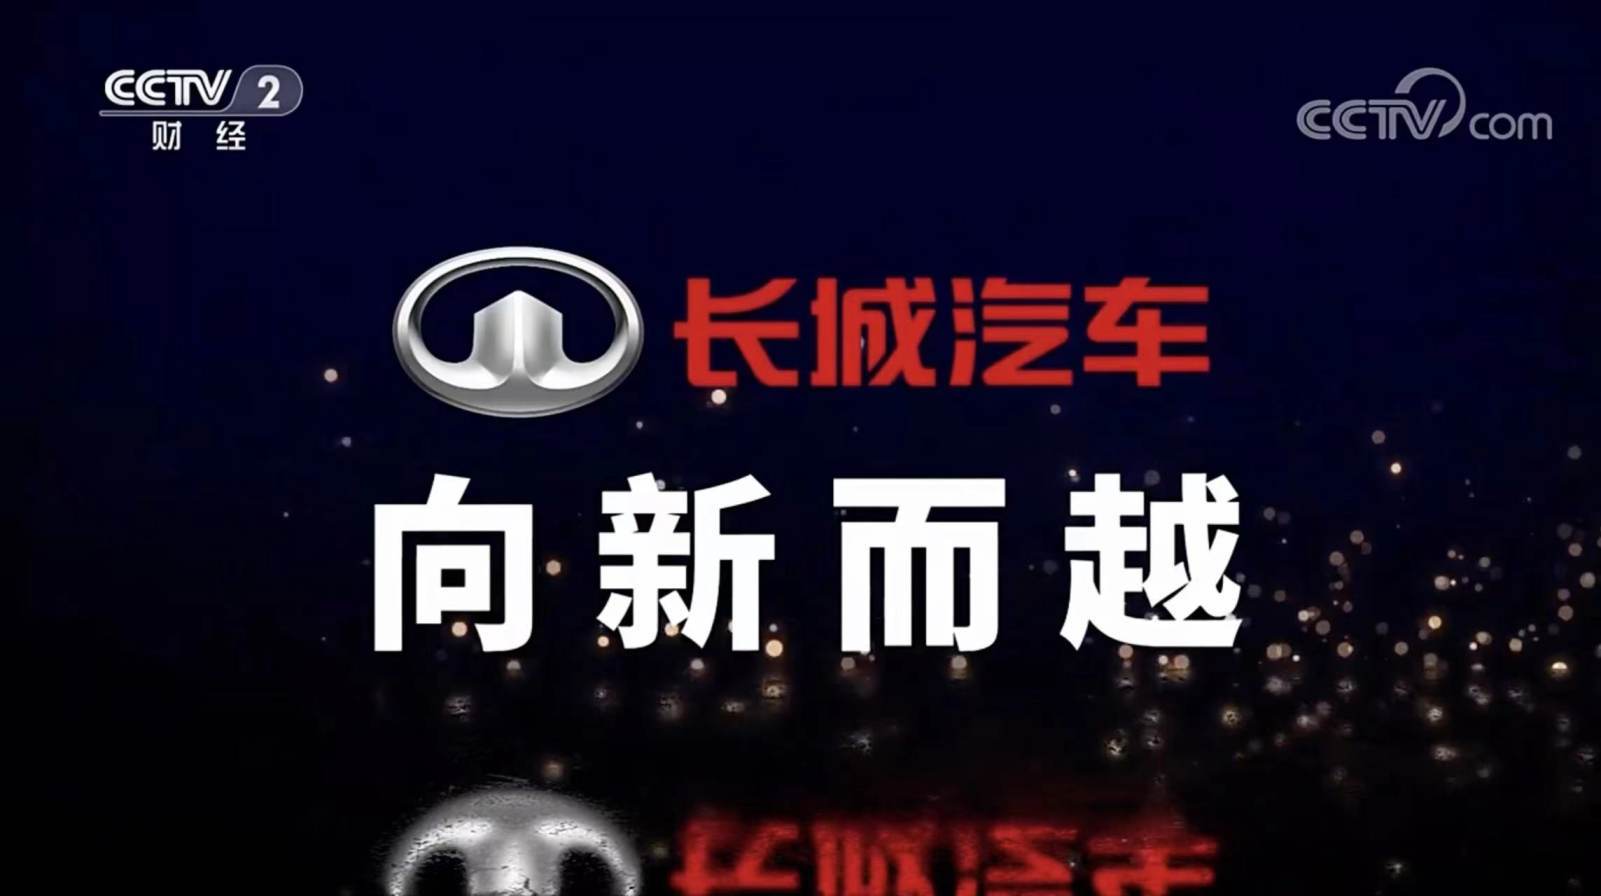 客来福广告强势登陆CCTV，四大频道联合展播！打造2018“海陆空”品牌新矩阵！